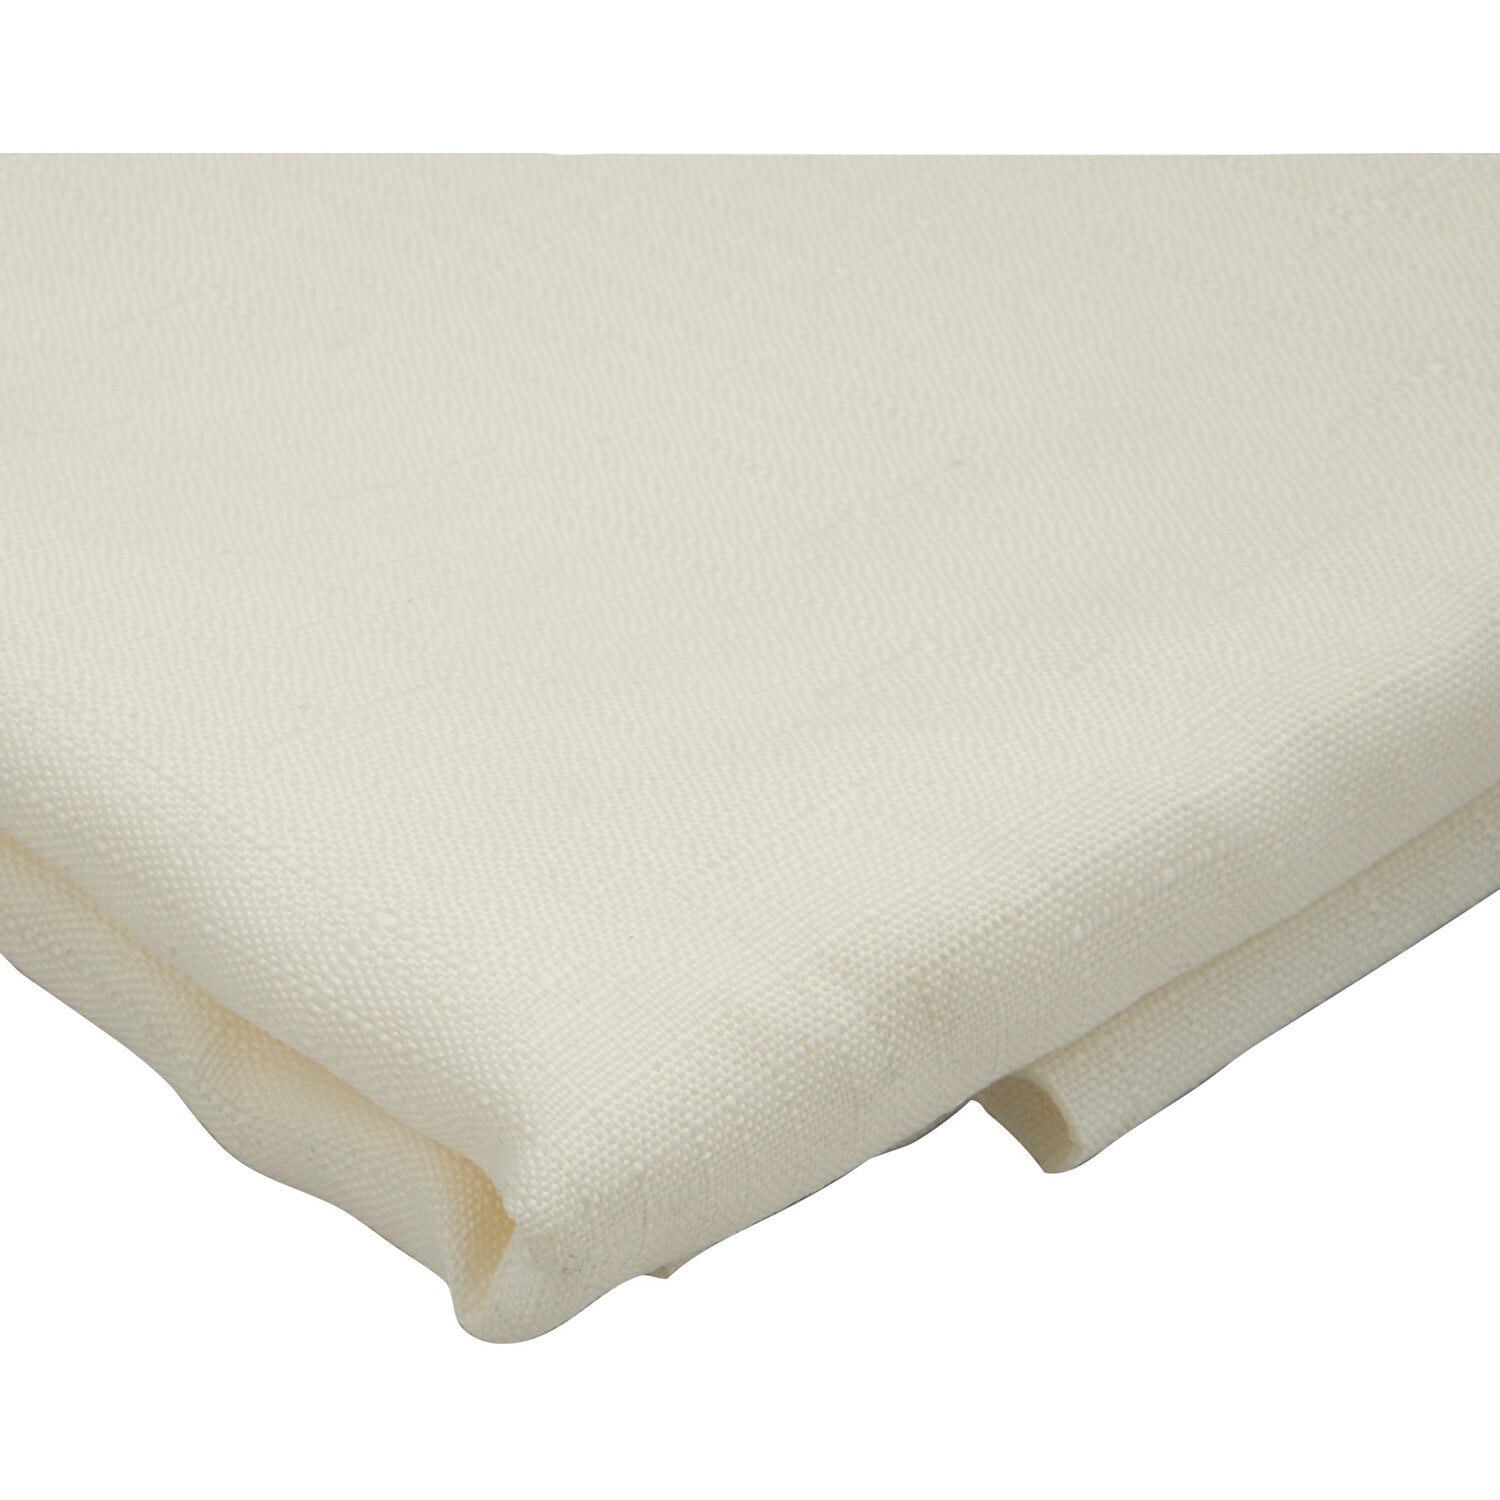 Divante White Linen Look Tablecloth 180 x 130cm Image 4